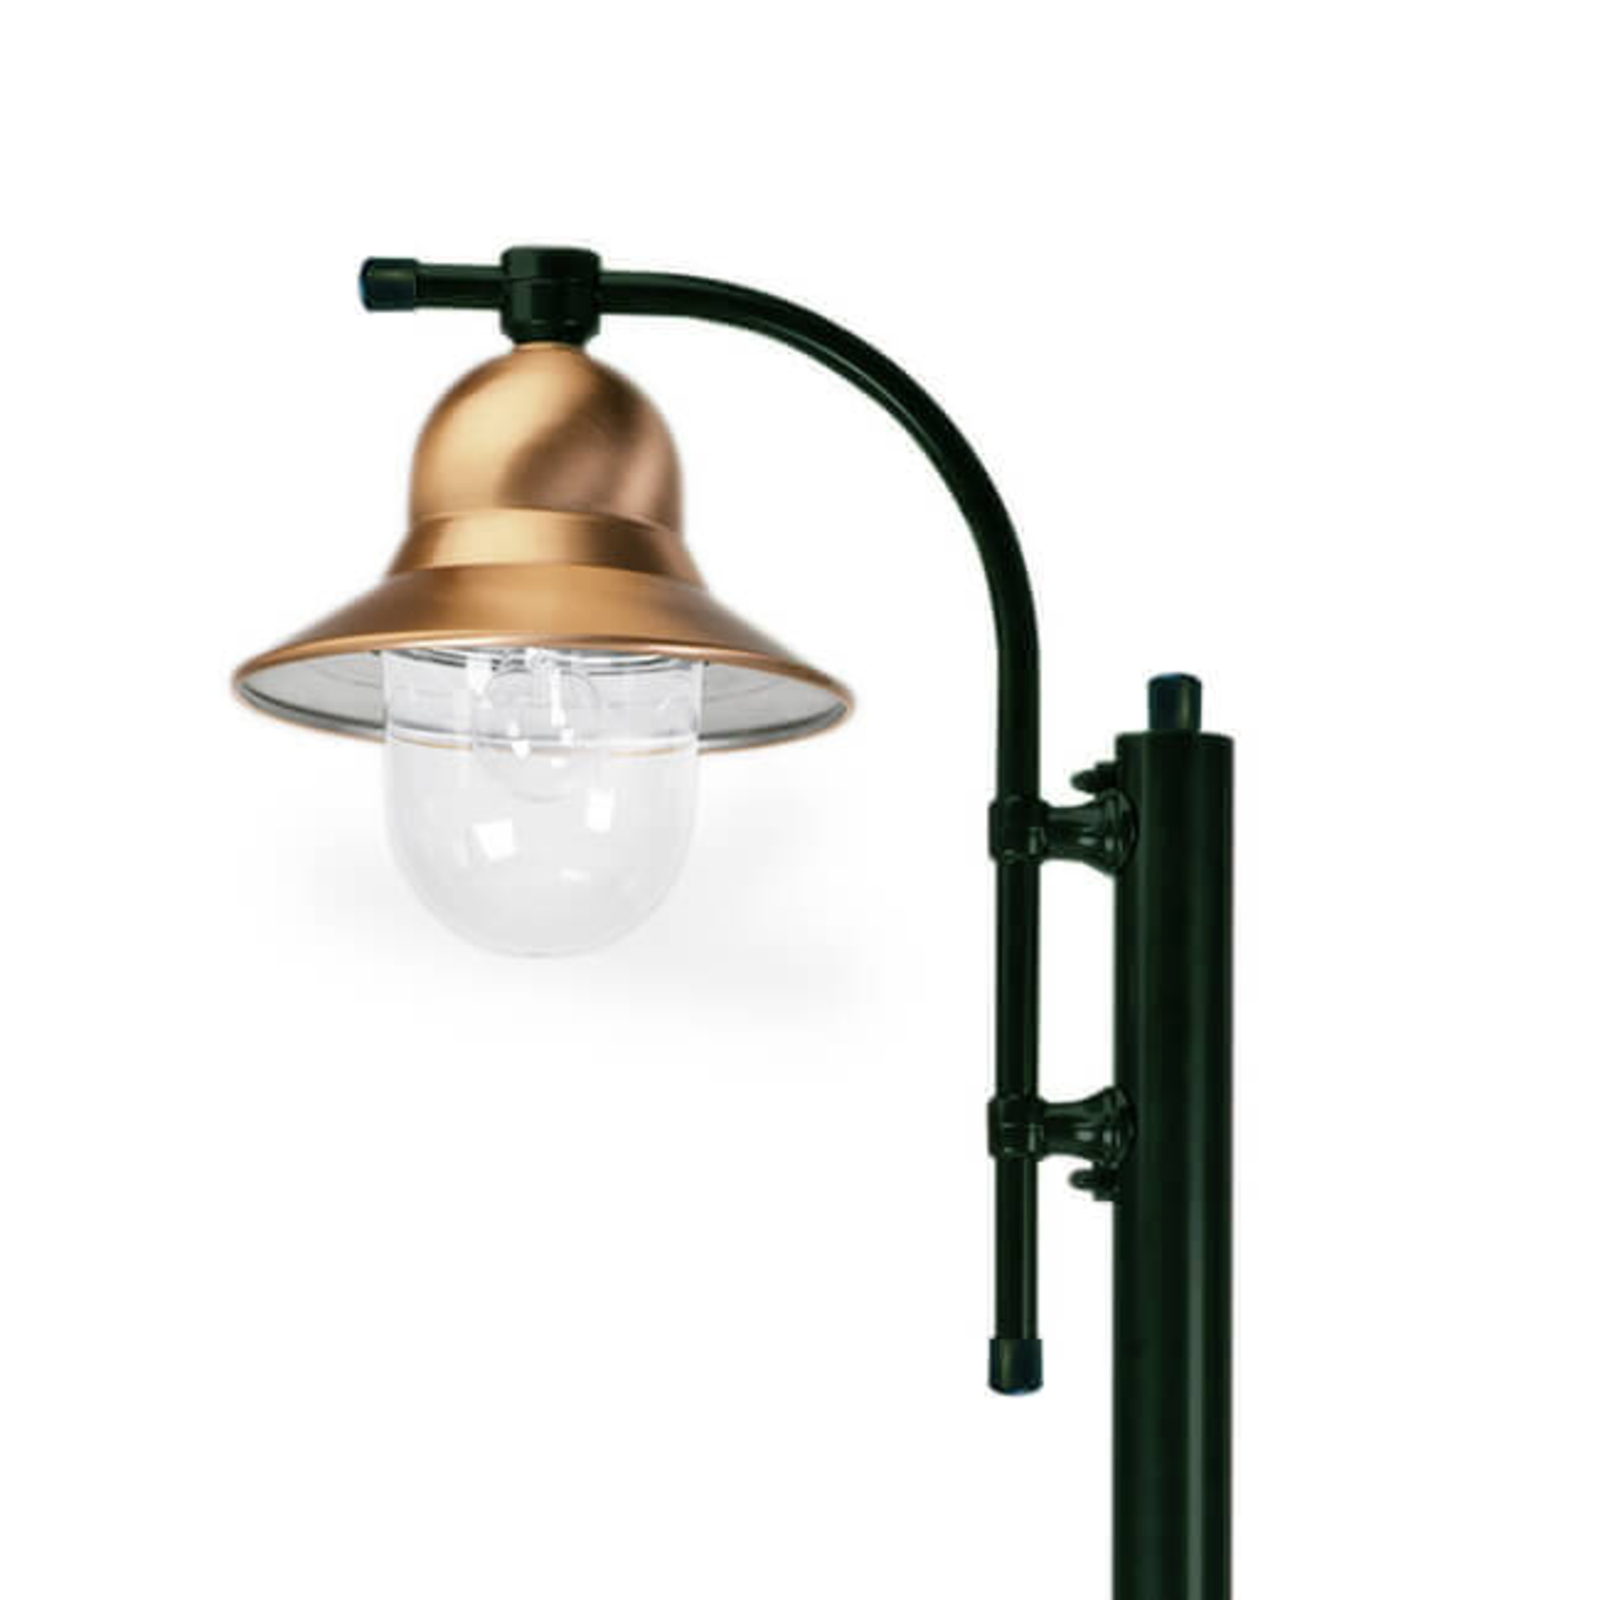 1-lámpás oszloplámpa Toscane 240 cm, zöld